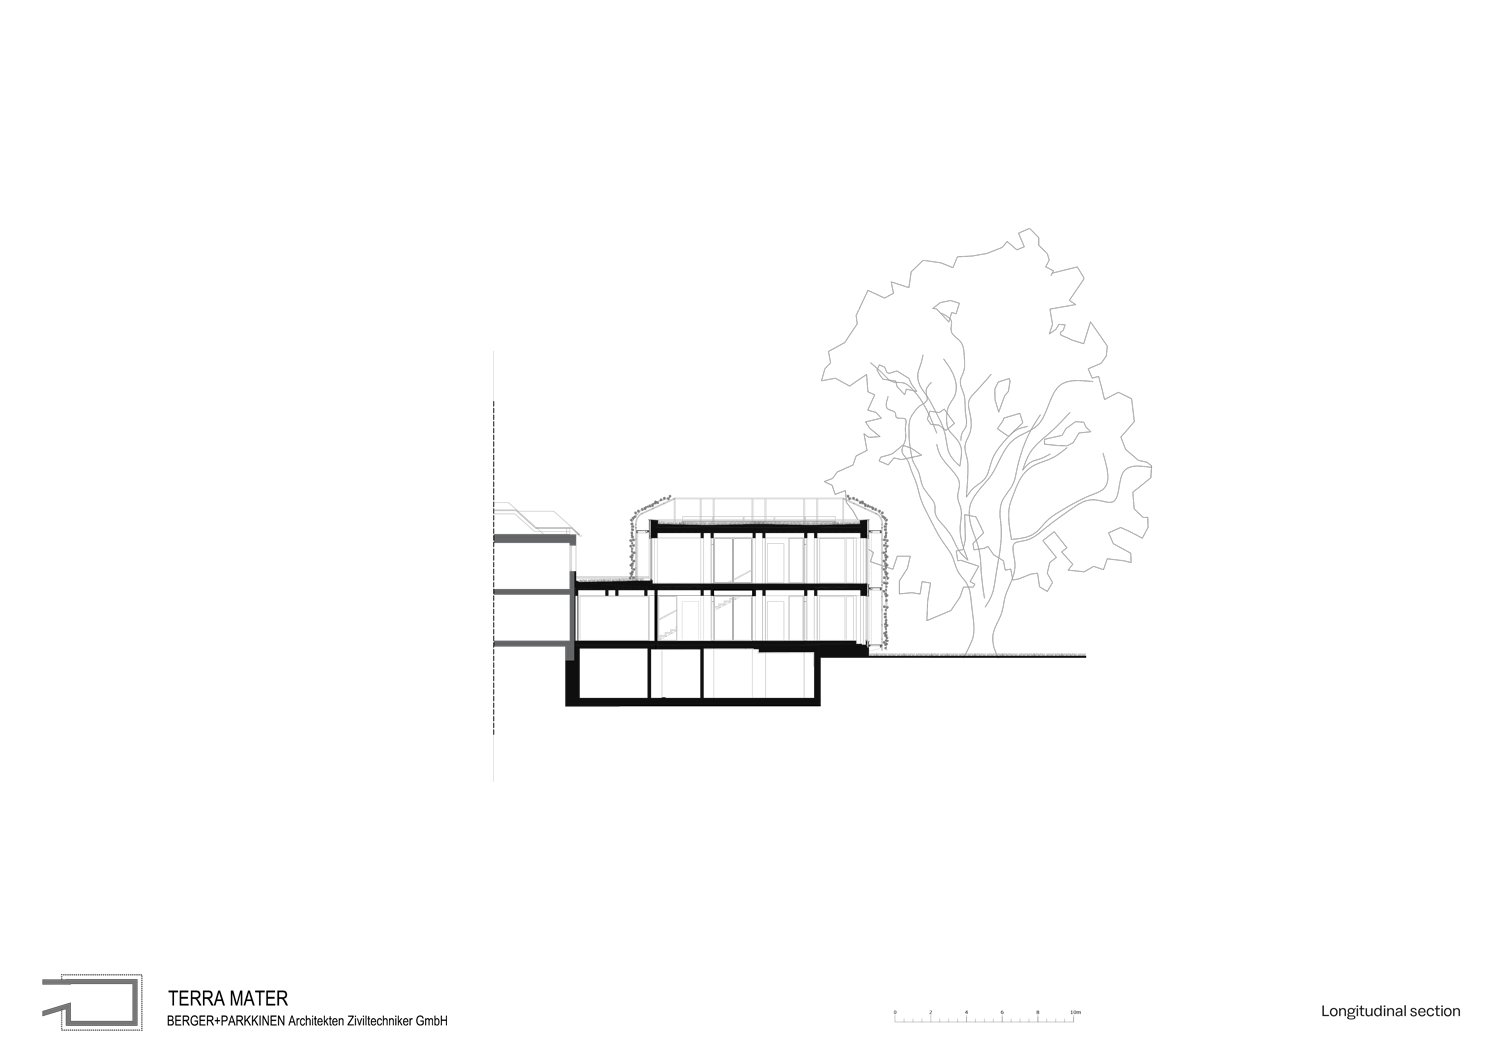 Longitudinal section Terra Mater | Berger Parkkinen Architekten